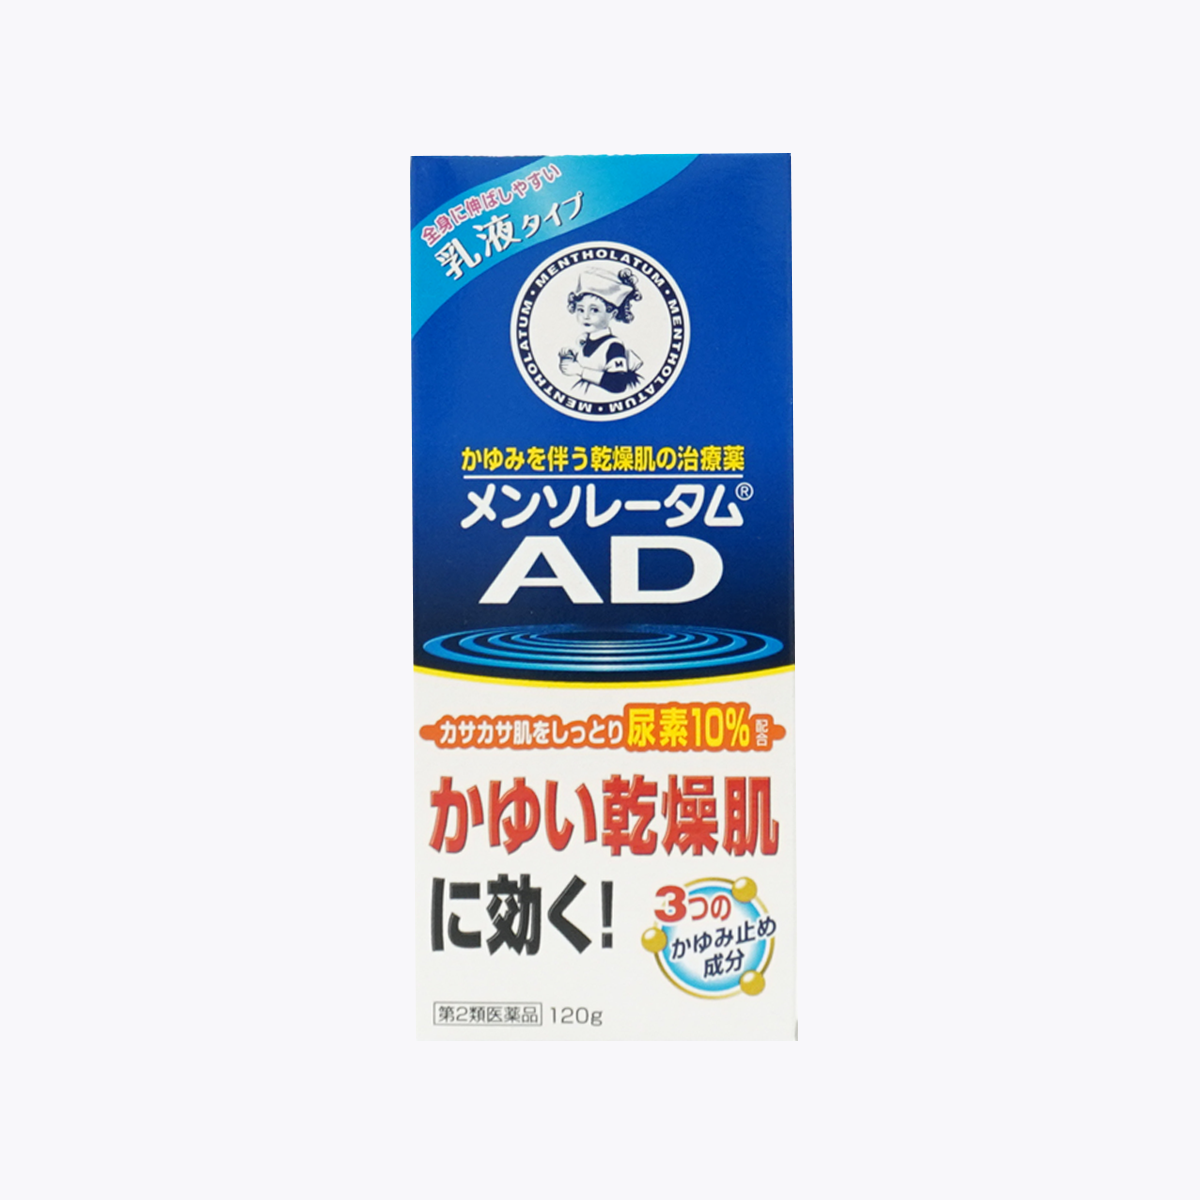 【第二類医薬品】メンソレータム AD乳液 120g